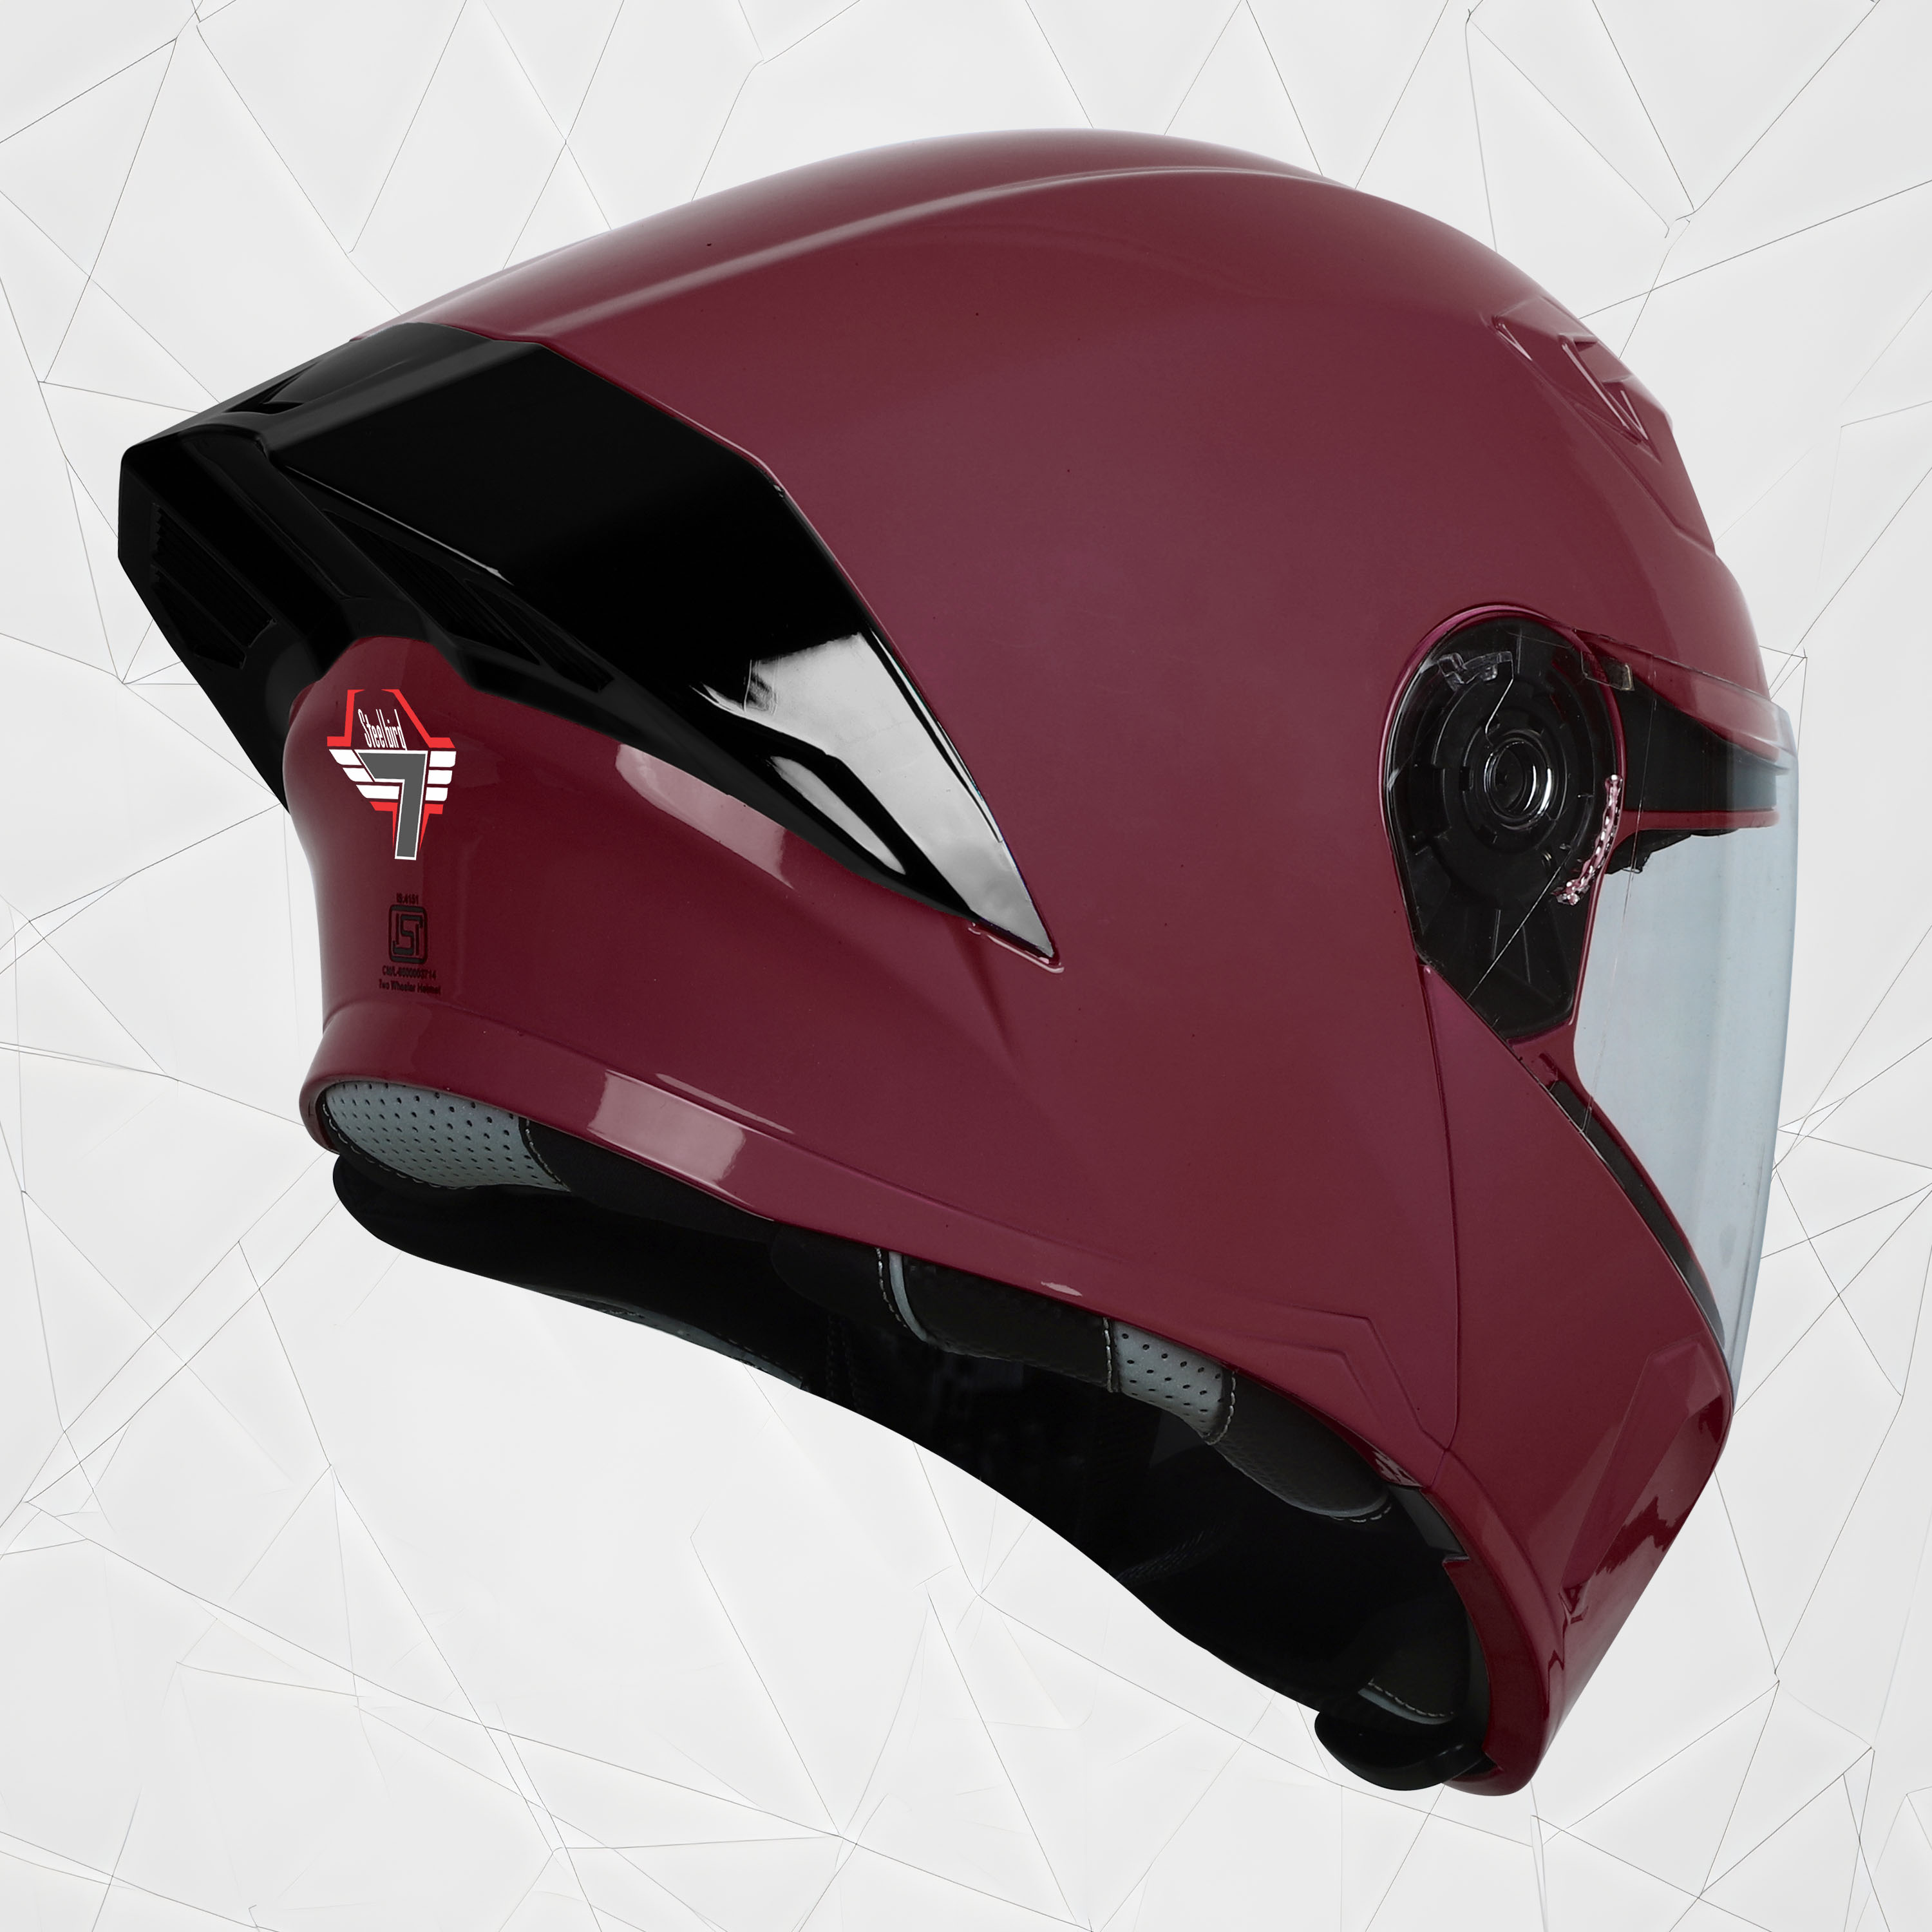 Steelbird SBA-20 7Wings ISI Certified Flip-Up Helmet With Black Spoiler For Men And Women (Matt Maroon With Clear Visor)